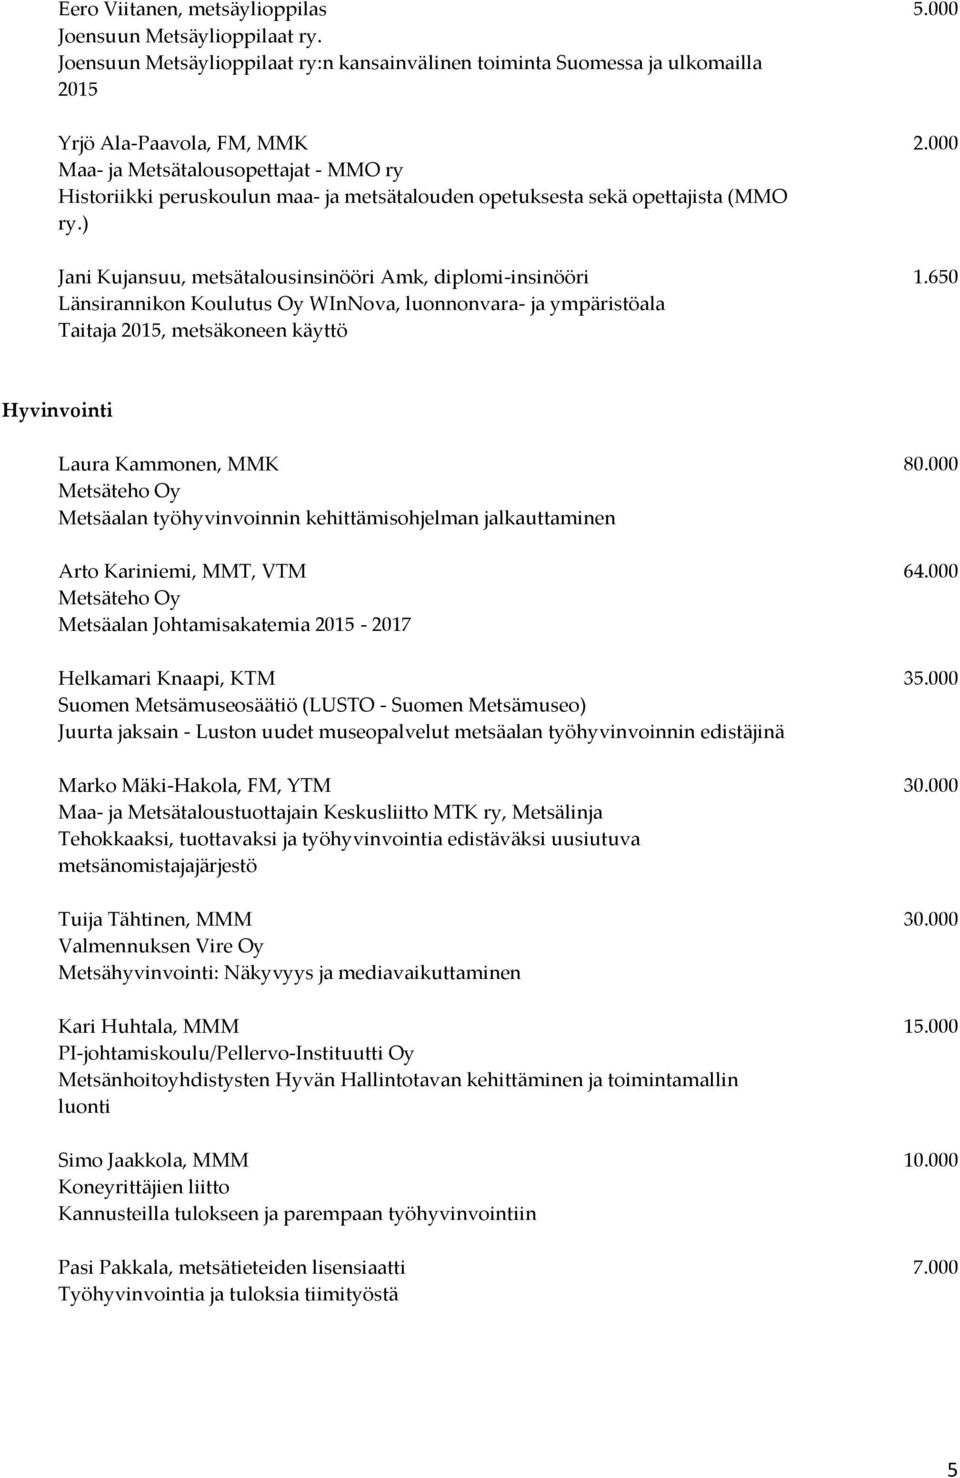 650 Länsirannikon Koulutus Oy WInNova, luonnonvara- ja ympäristöala Taitaja 2015, metsäkoneen käyttö Hyvinvointi Laura Kammonen, MMK 80.